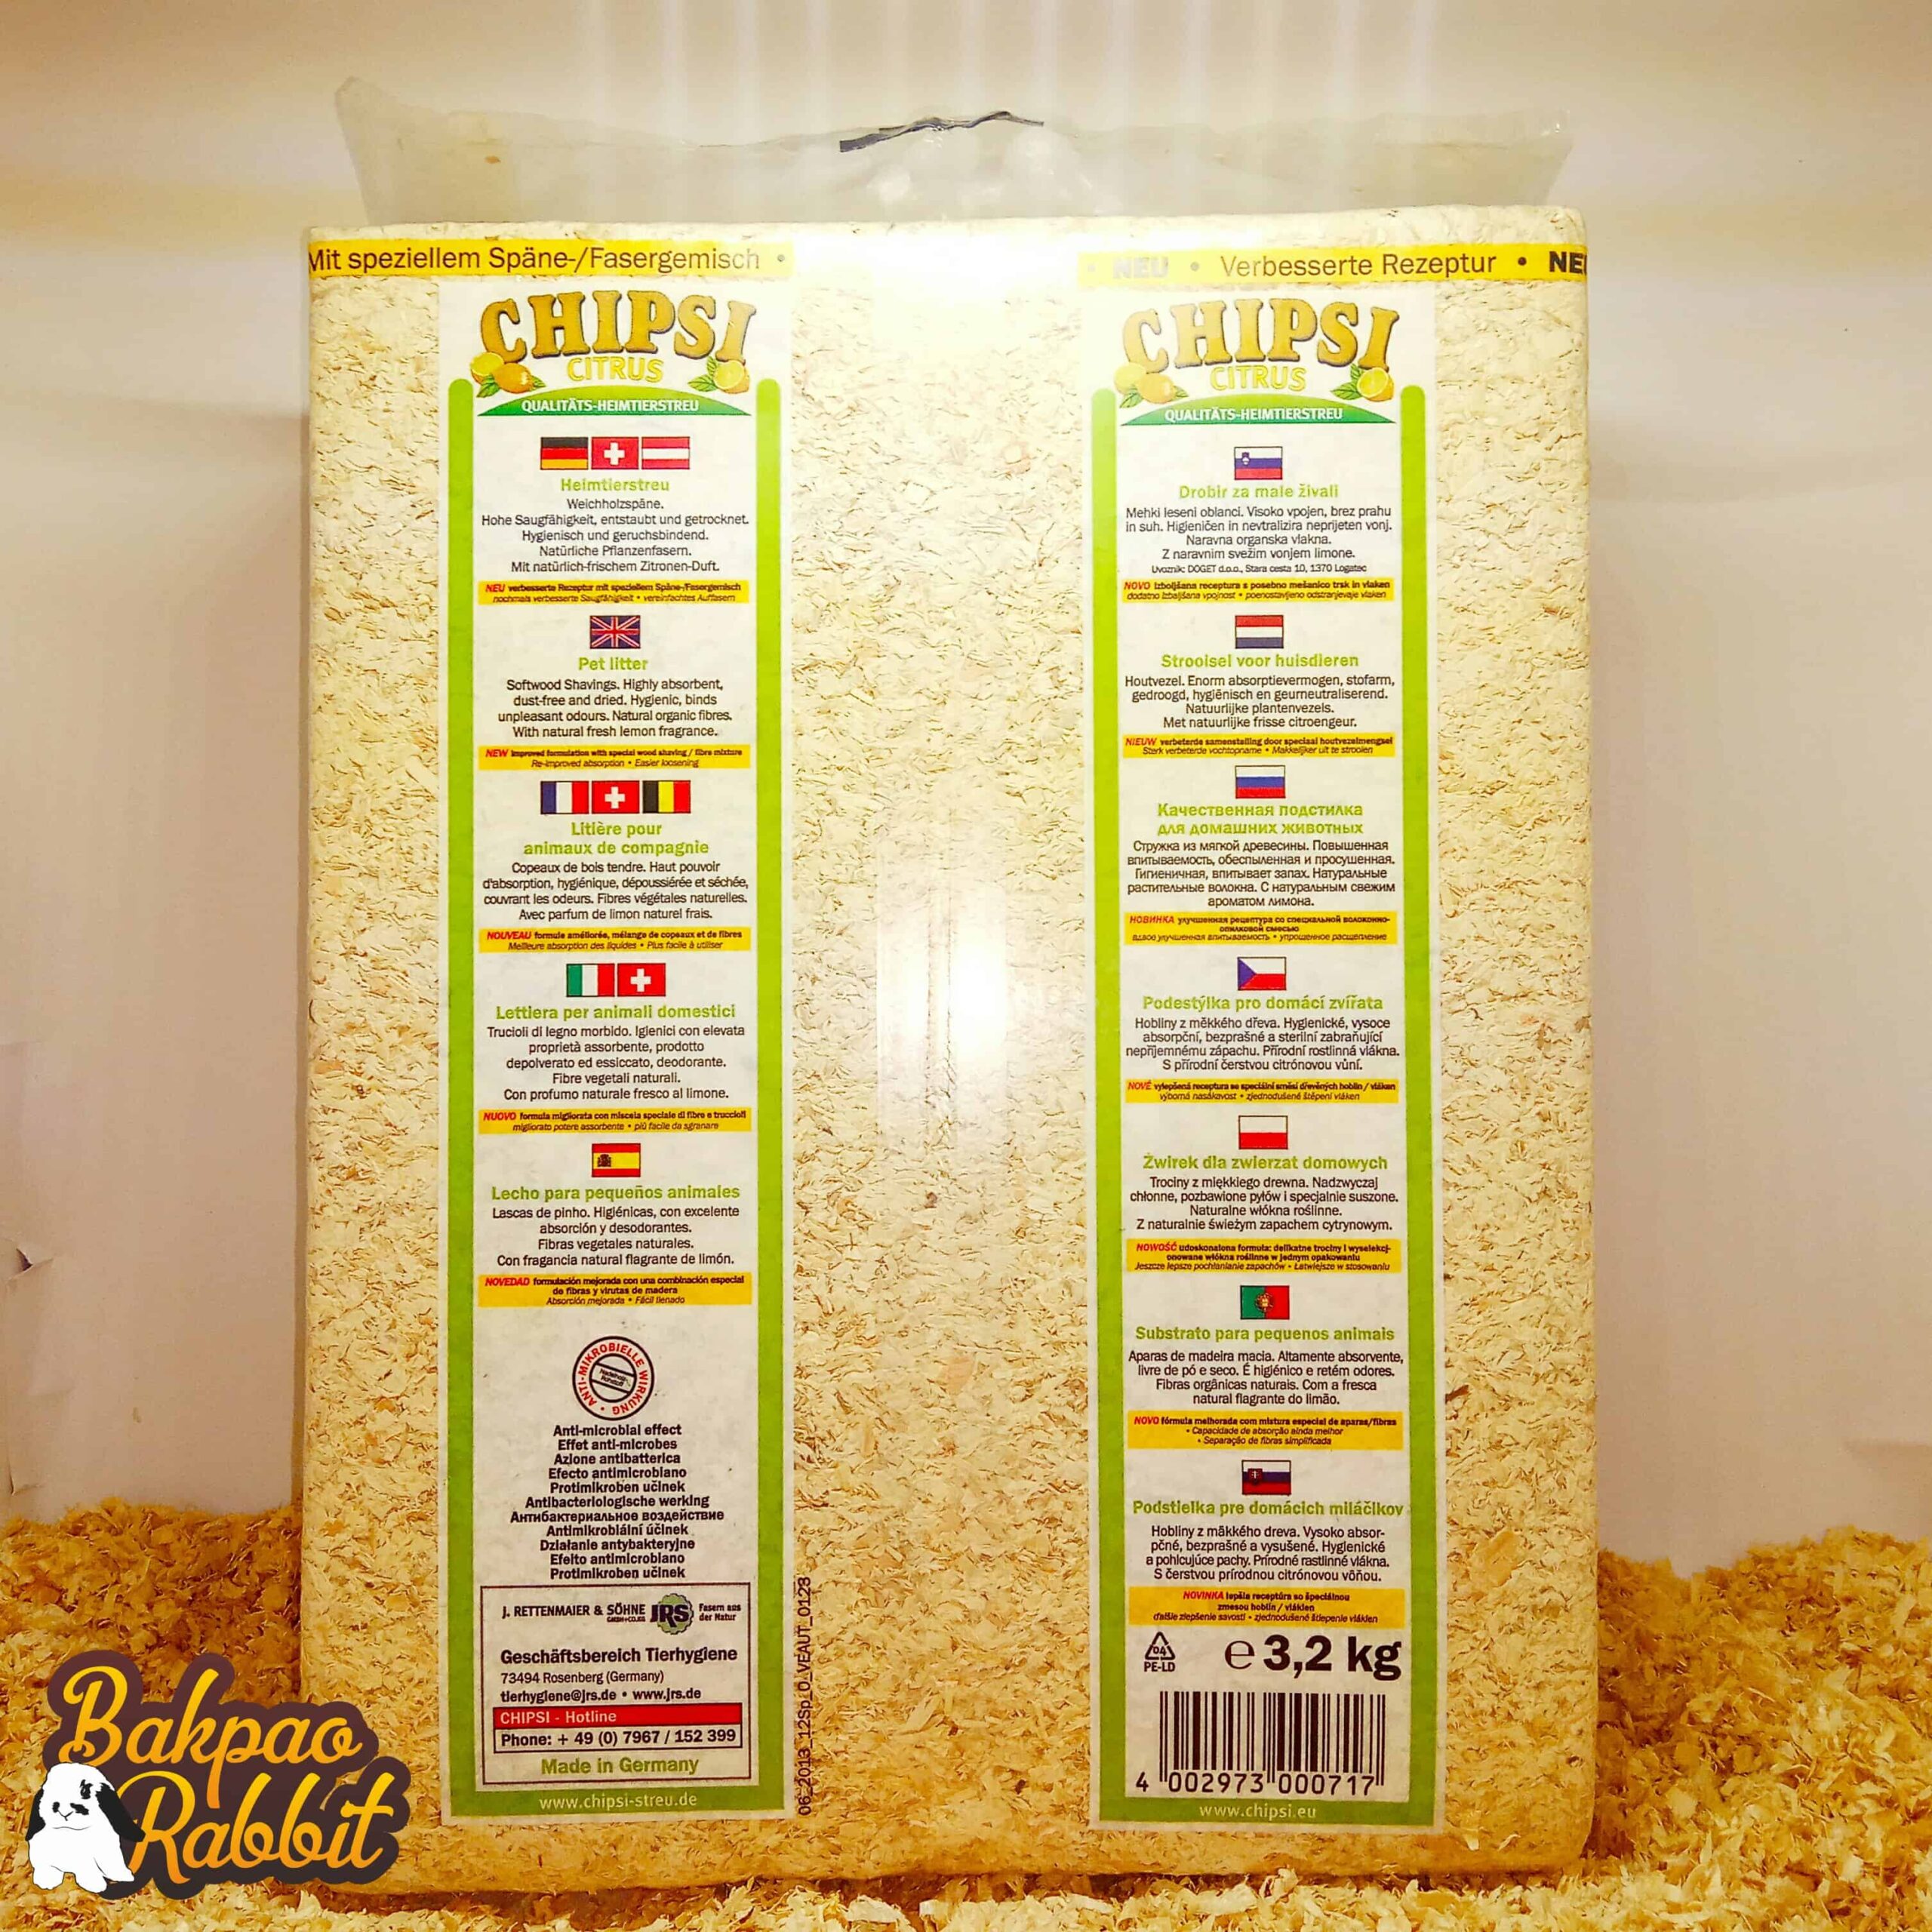 CHIPSI Citrus Wood Chip Litter 3.2kg